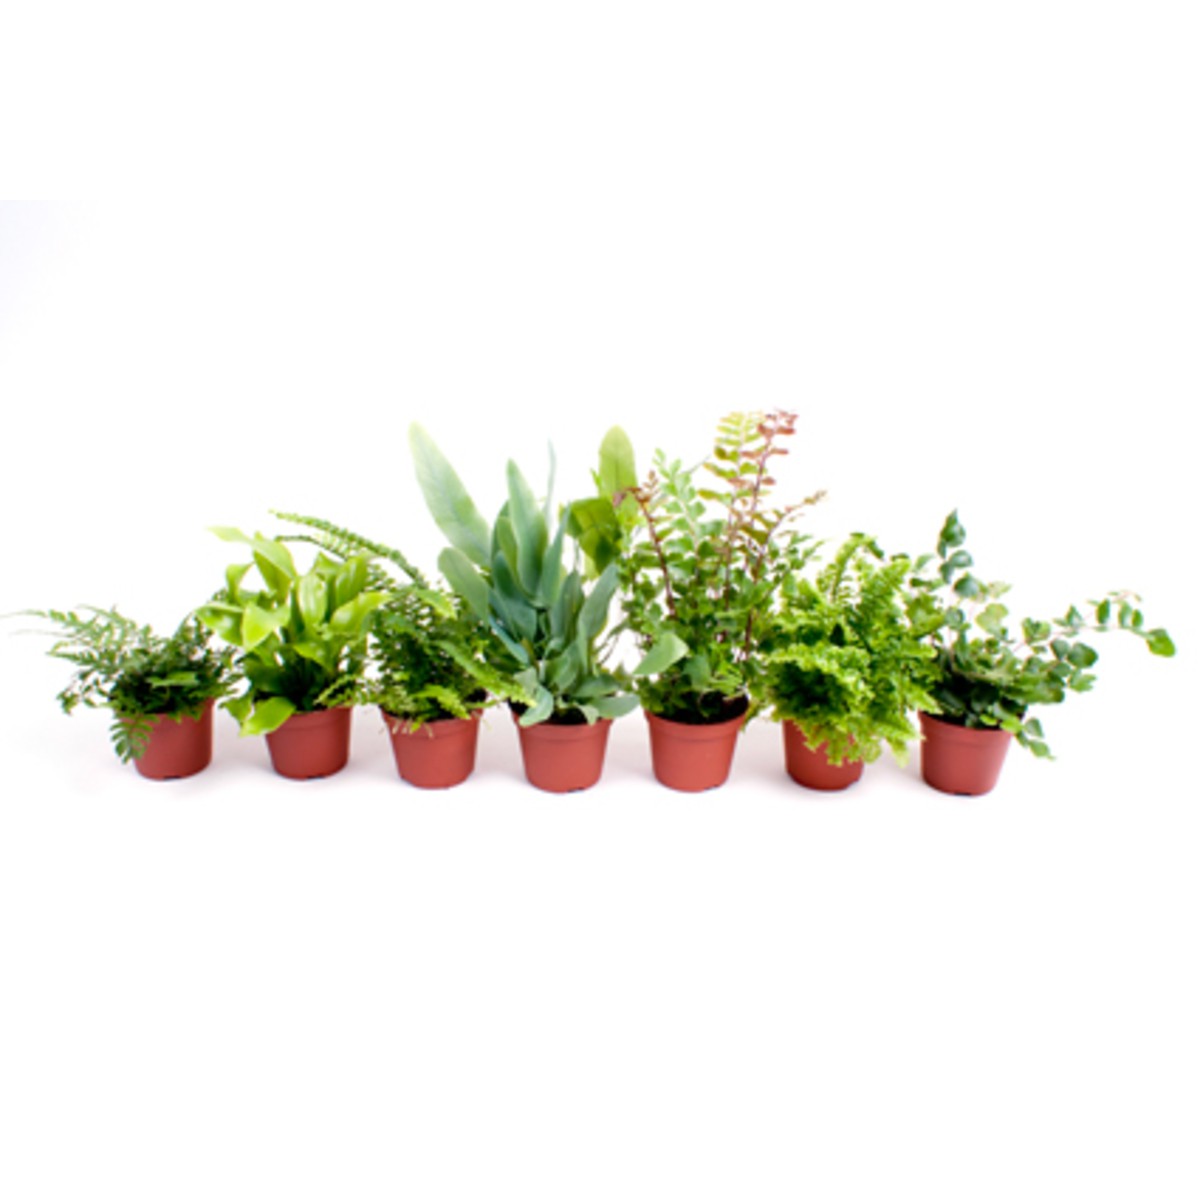   Plante 'Mini'  Pot 5.5-6 cm